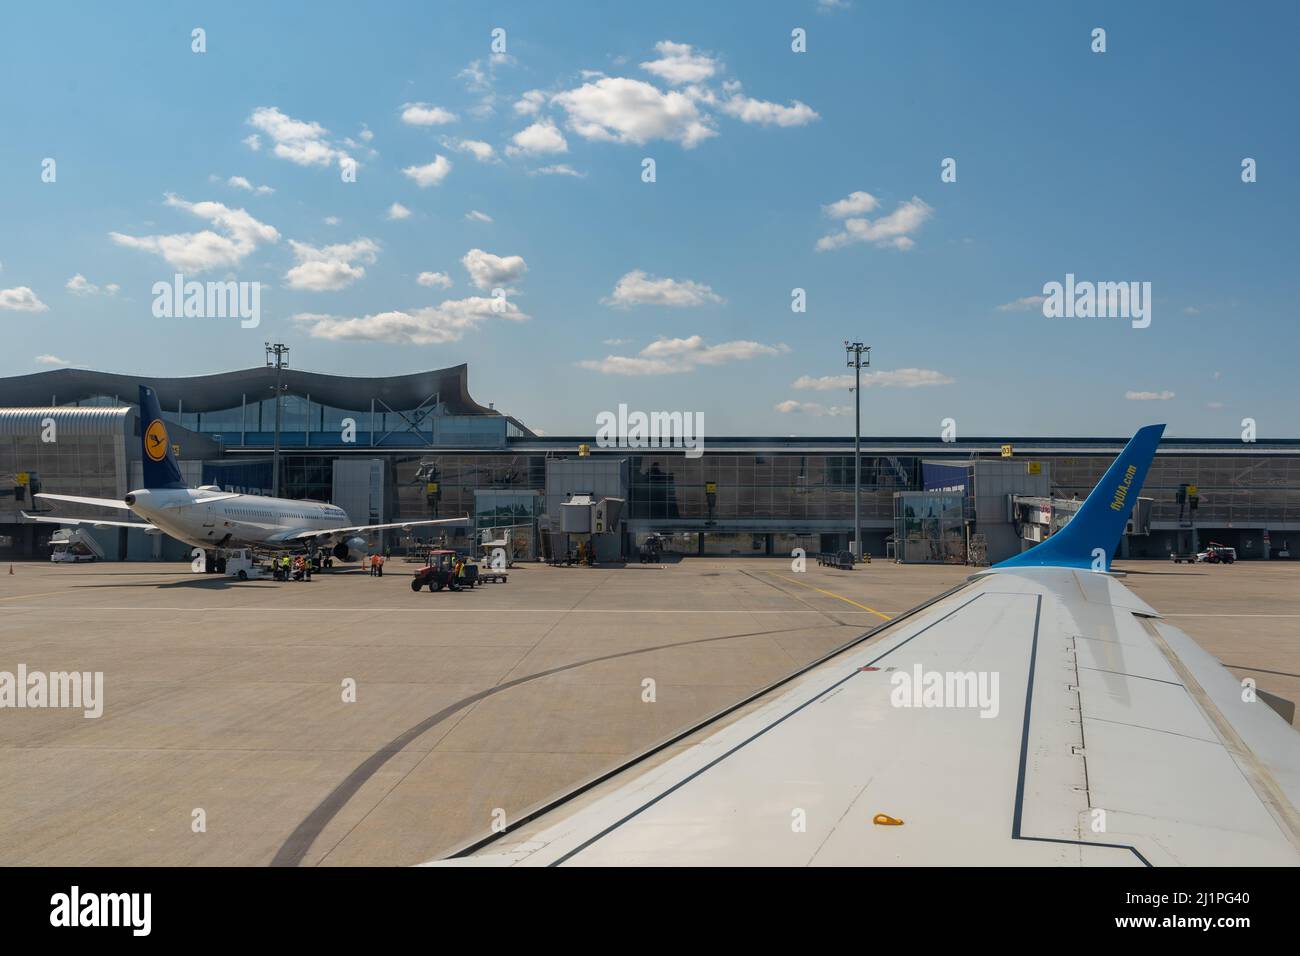 Internationaler Flughafen Boryspil. Terminal D und Parkplatz für Flugzeuge. Flugzeug auf dem Vorfeld. Flüge und Reisen. Kiew, Ukraine - 3. August 2021. Stockfoto